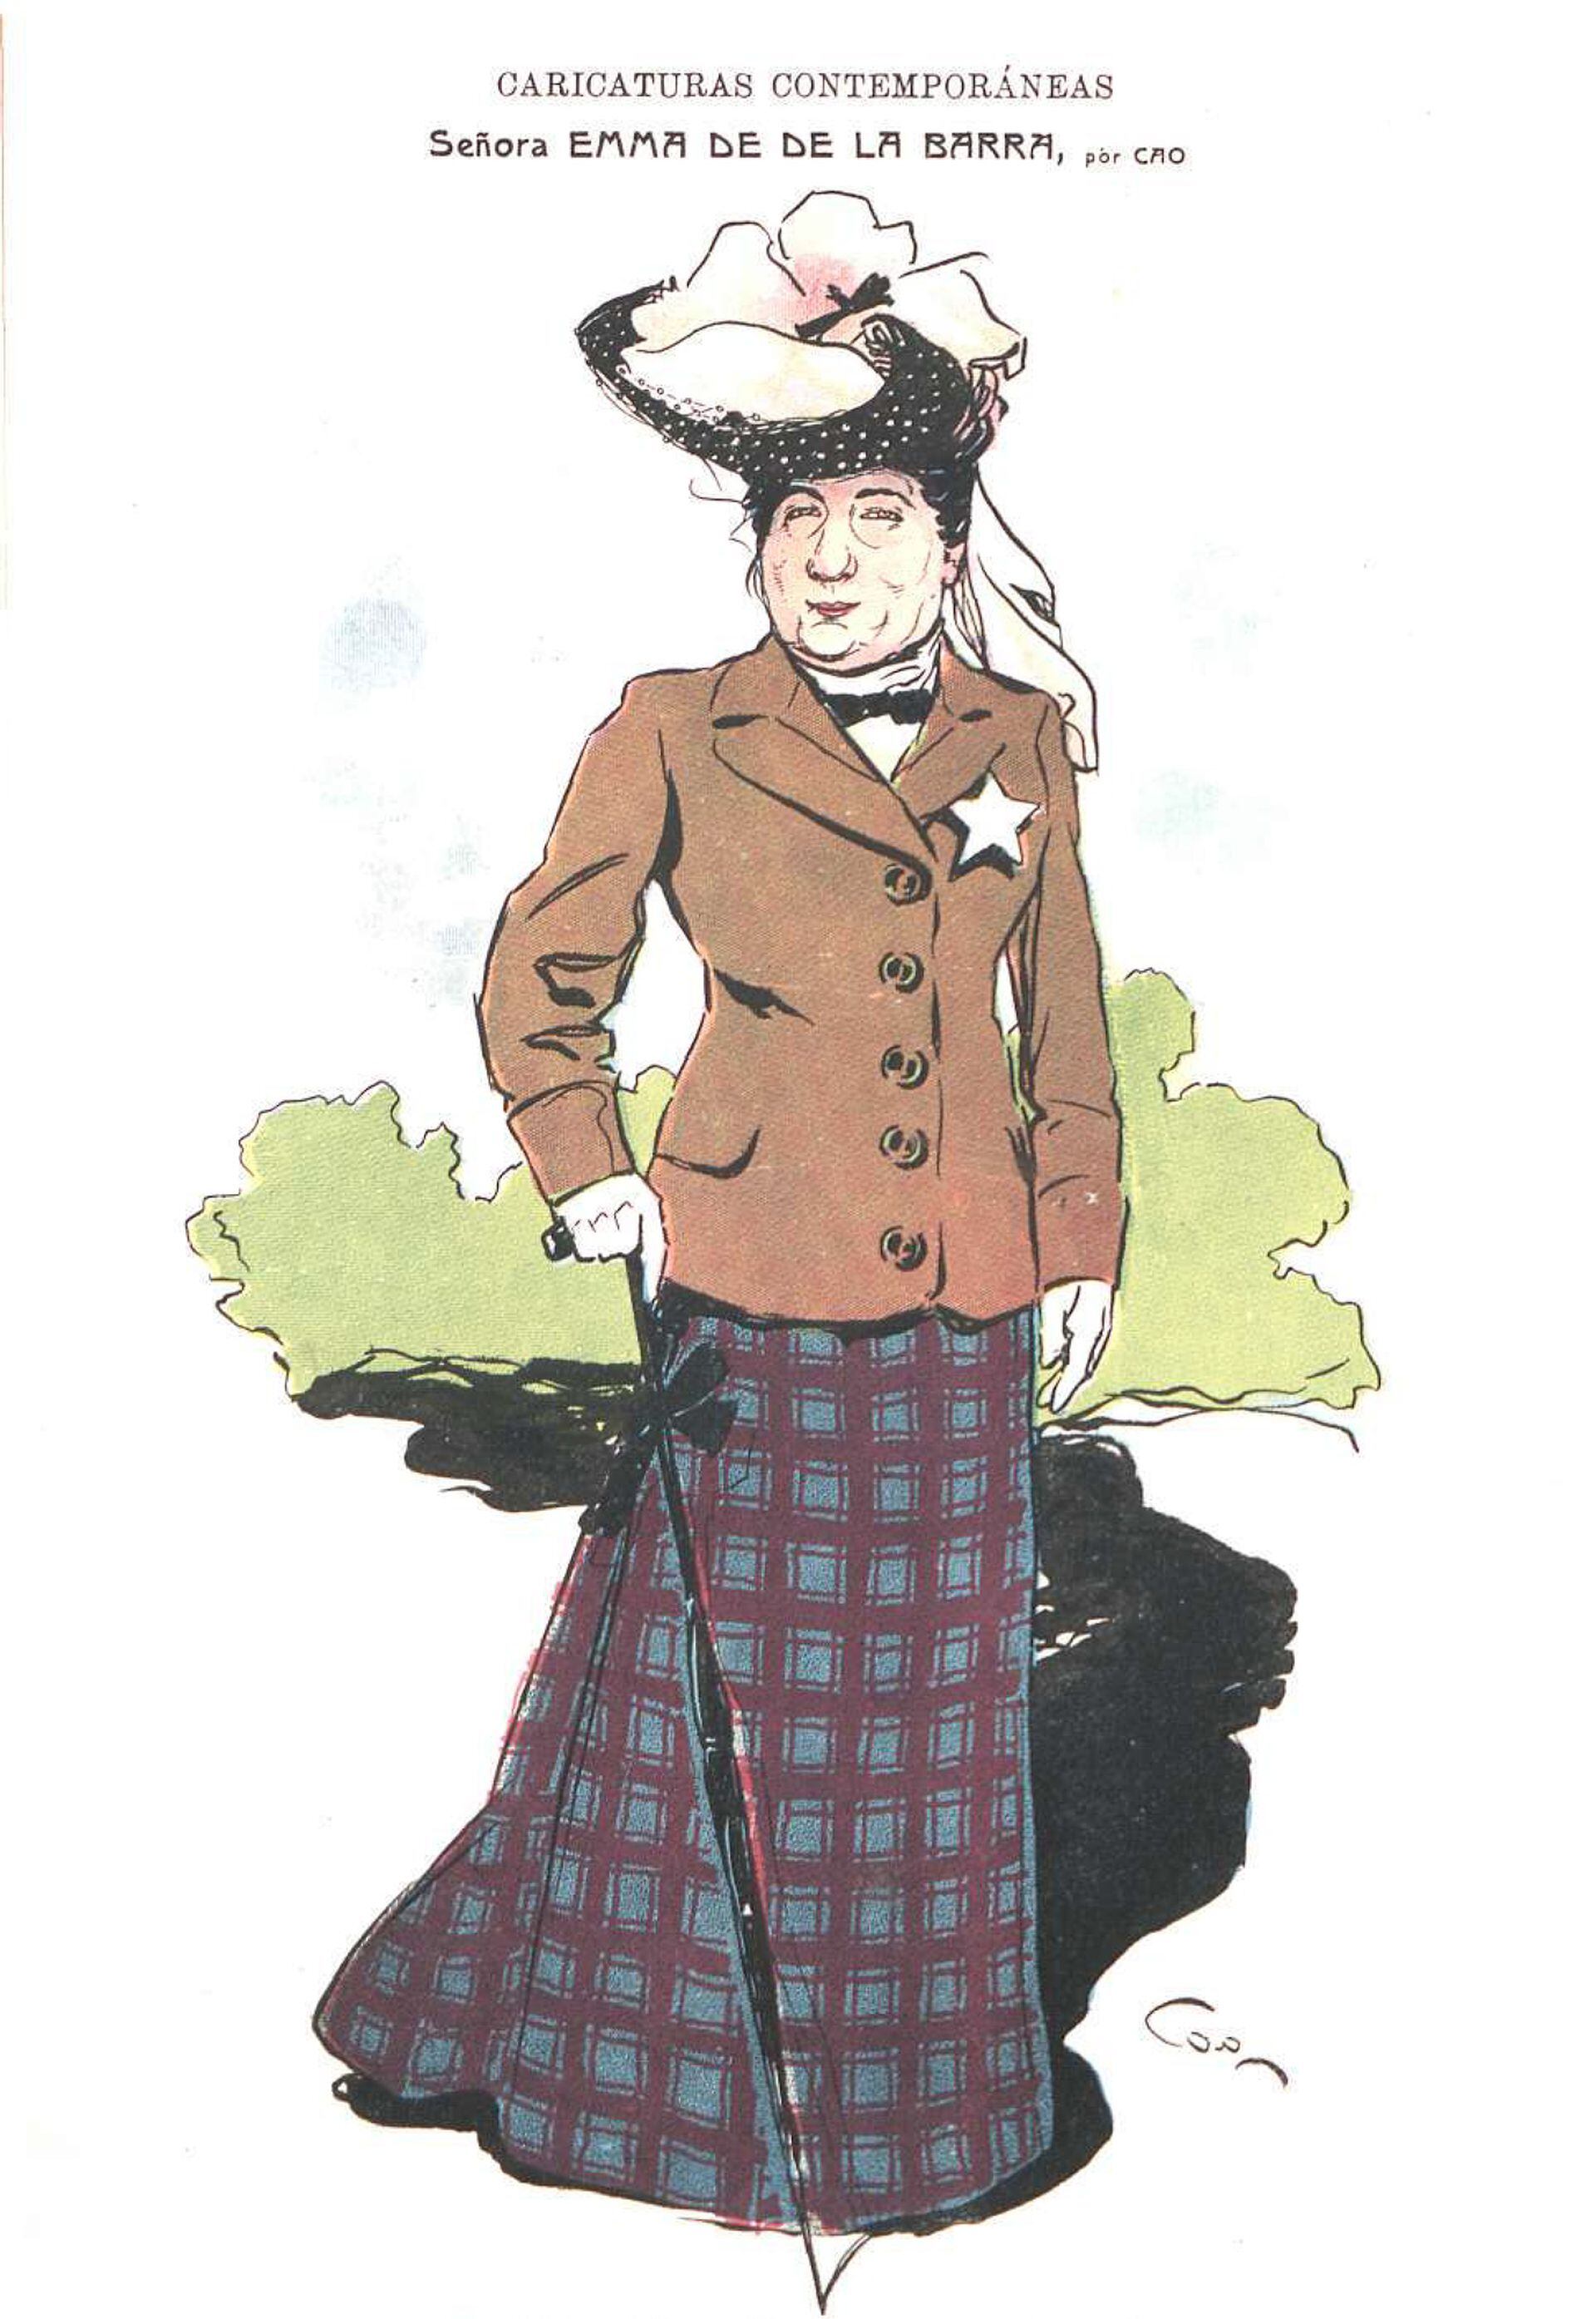 Caricatura de Emma de la Barra publicada en 1905 por Caras y Caretas